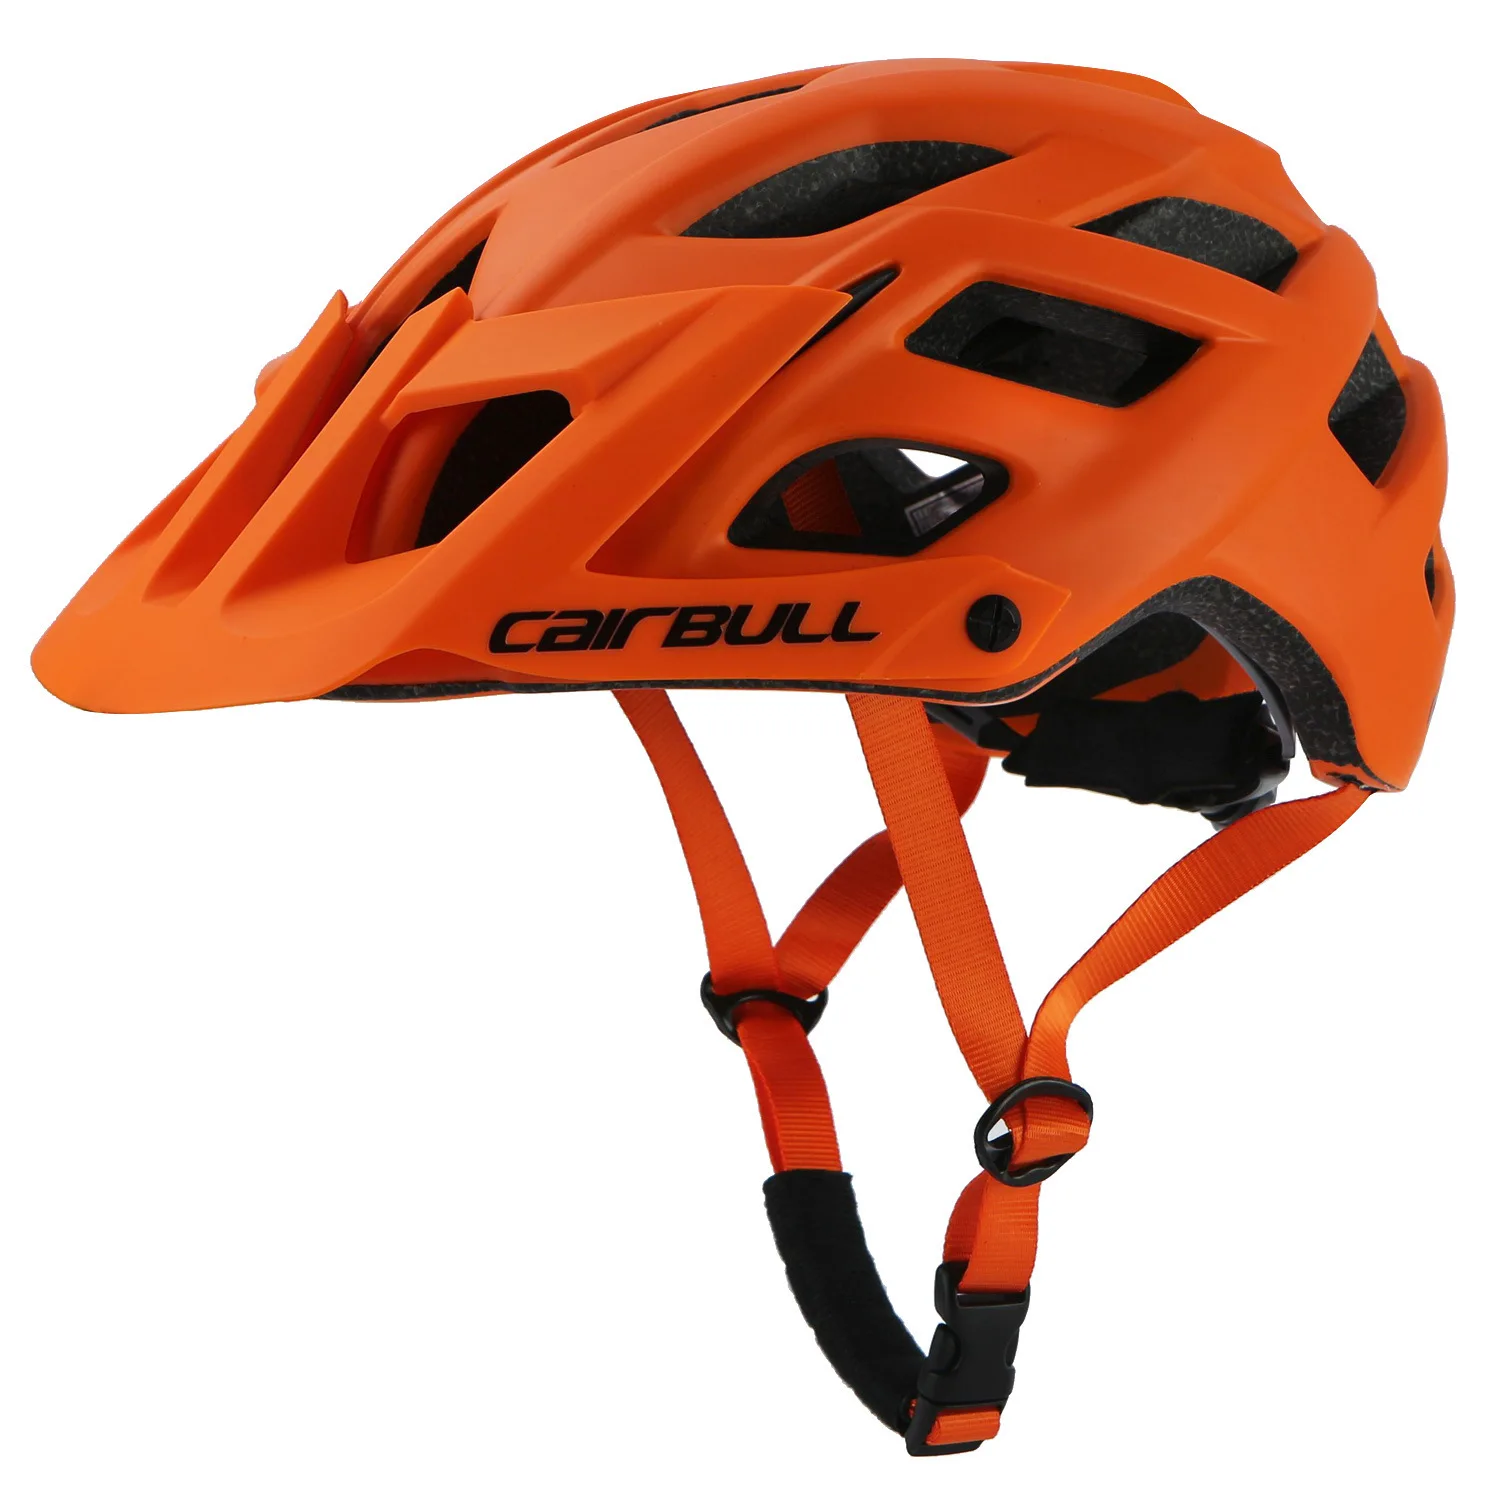 CAIRBULL велосипедные шлемы EPS сверхлегкие межслойные аэродинамические велосипедные шлемы со съемным козырьком мужские велосипедные шлемы 55-61 см AM